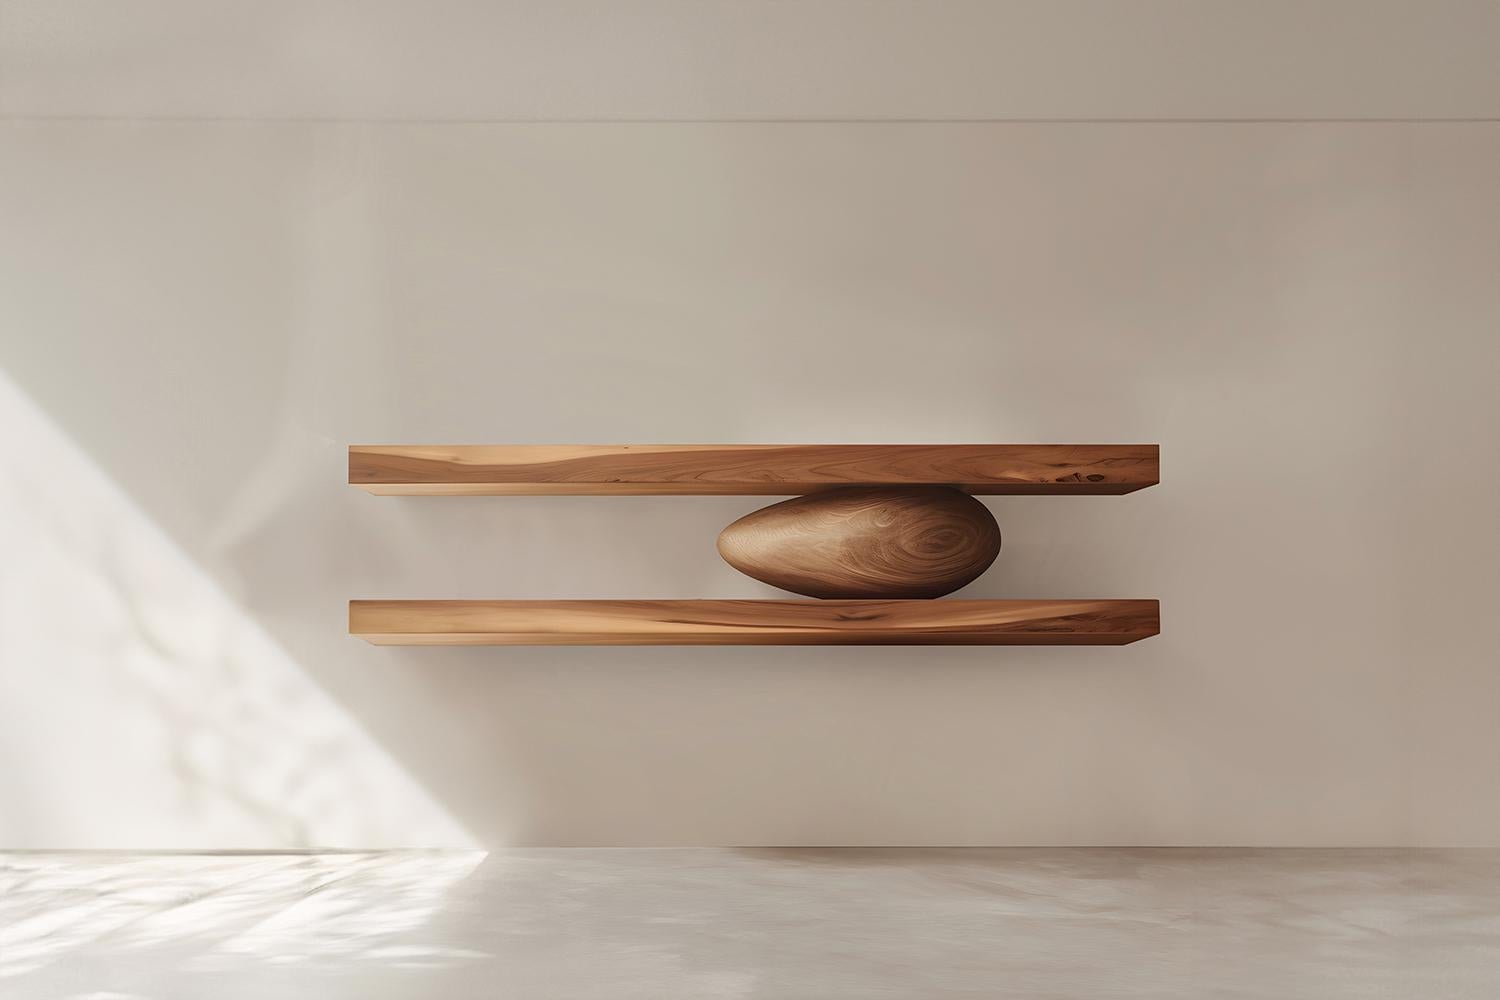 Ensemble de deux étagères flottantes avec un galet sculptural en bois au milieu, Sereno by Joel Escalona

-

Que se passe-t-il lorsque la pratique devient de l'art ?
Que se passe-t-il lorsque l'ornementation prend de l'importance ?

Telles sont les